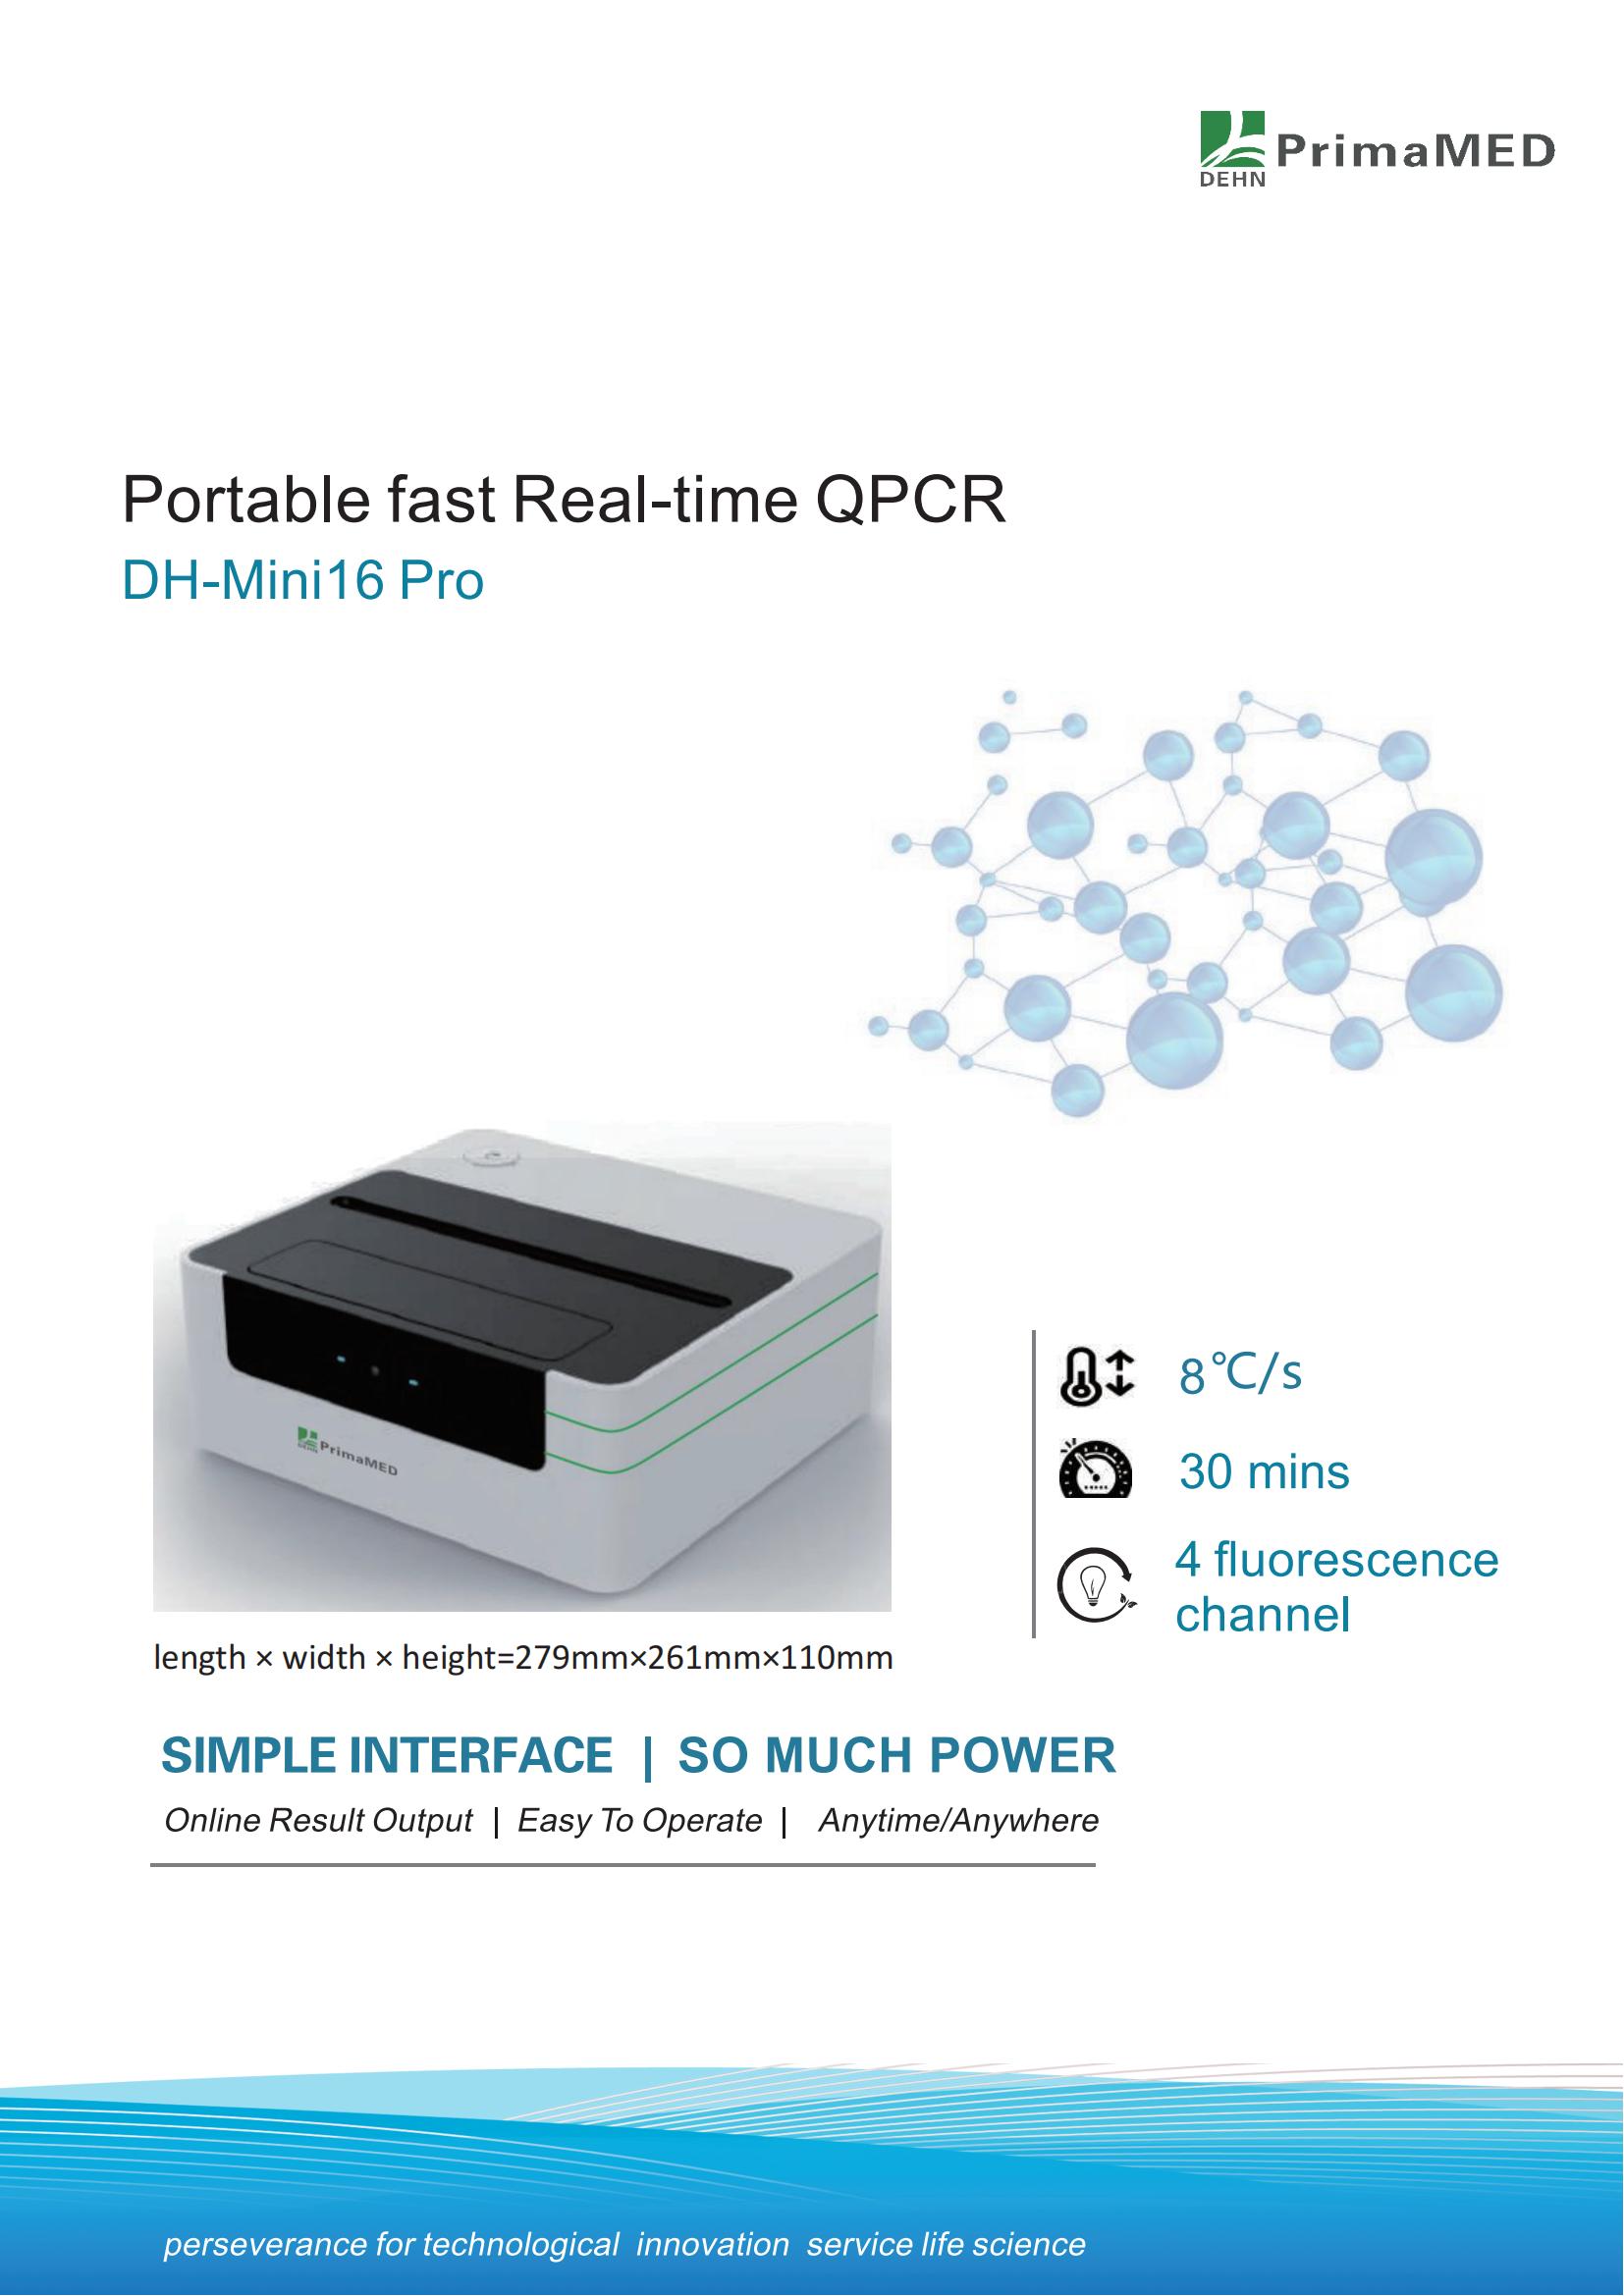 QPCR portable rapide en temps réel